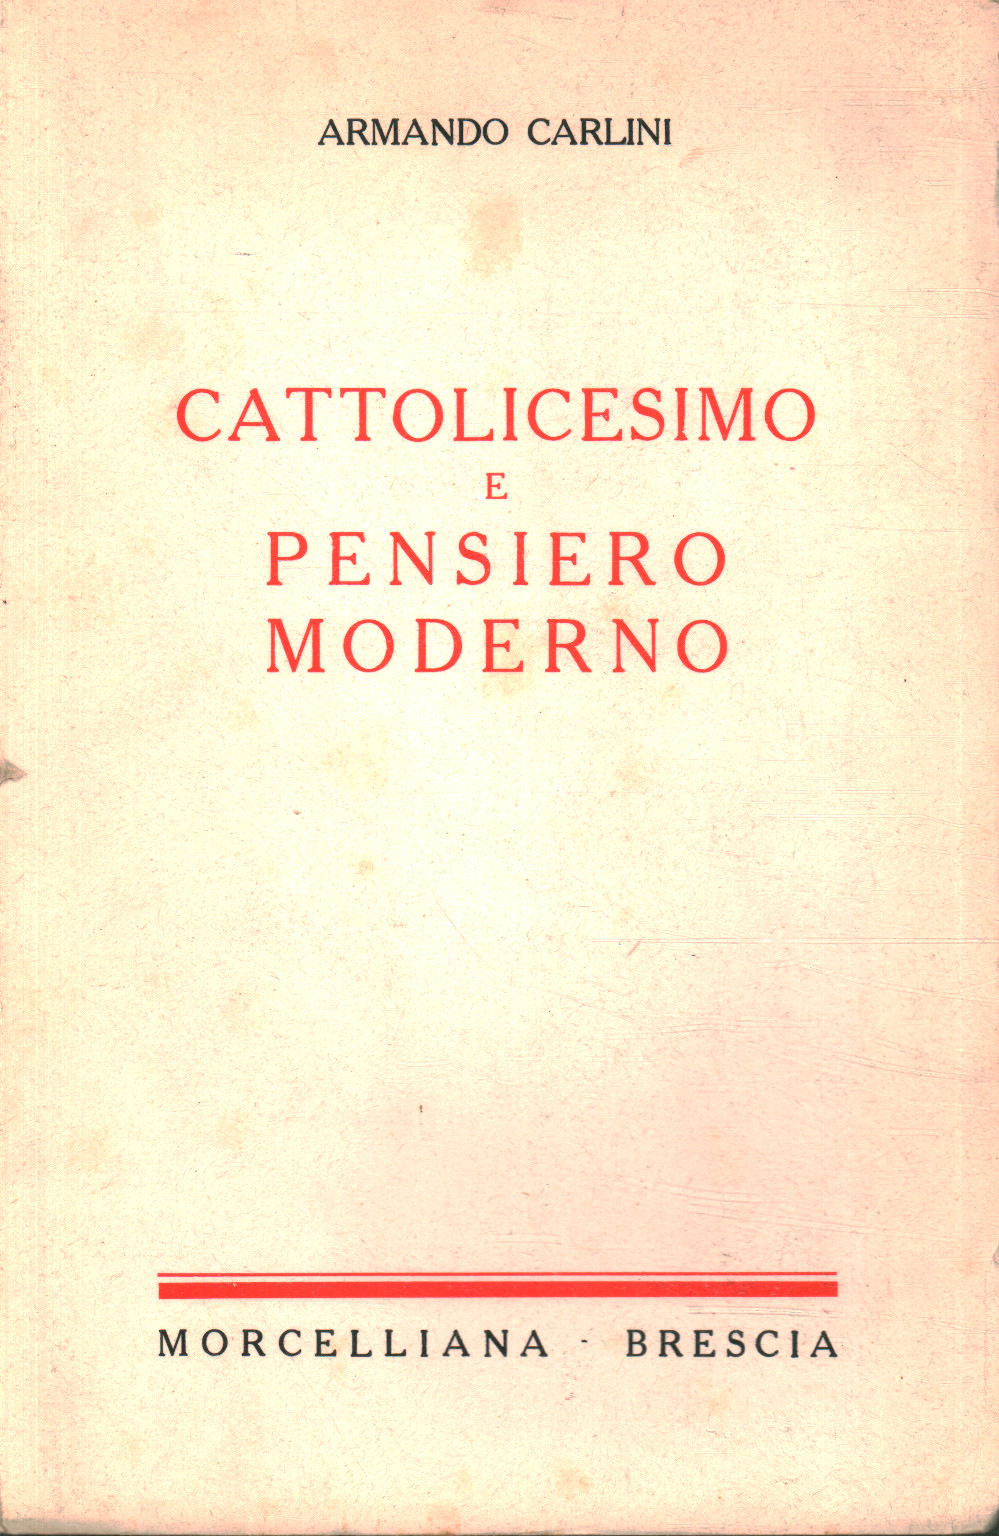 Katholizismus und modernes Denken, s.a.